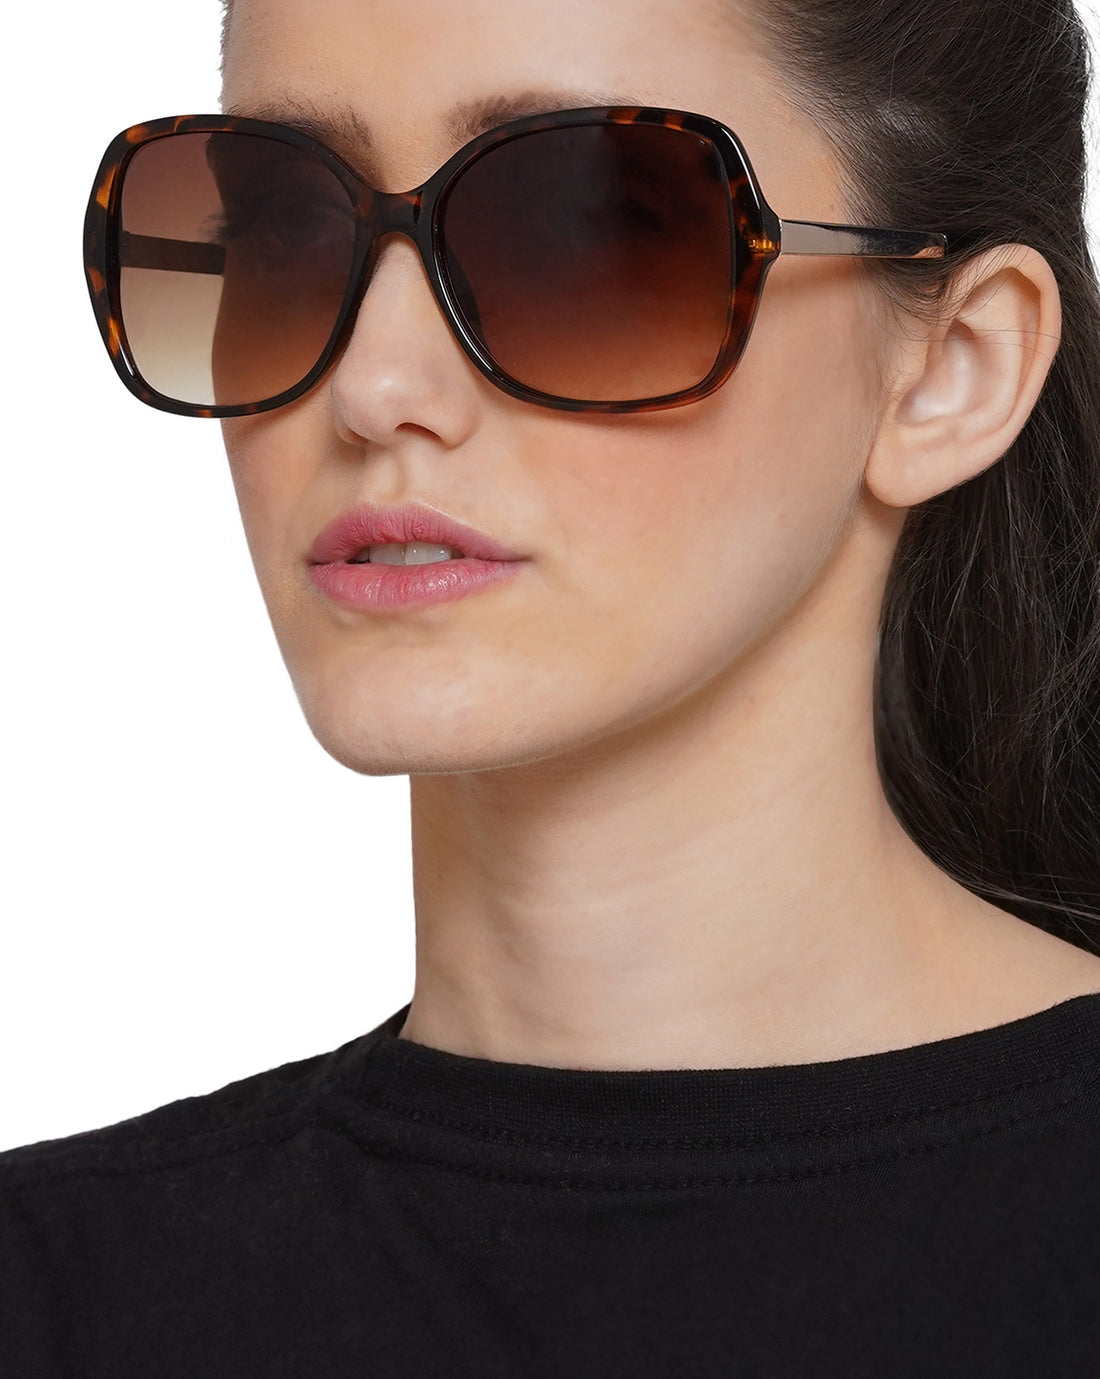 Carlton London Yellow Lens &amp; Brown Oversized Sunglasses Uv Protected Lens For Women